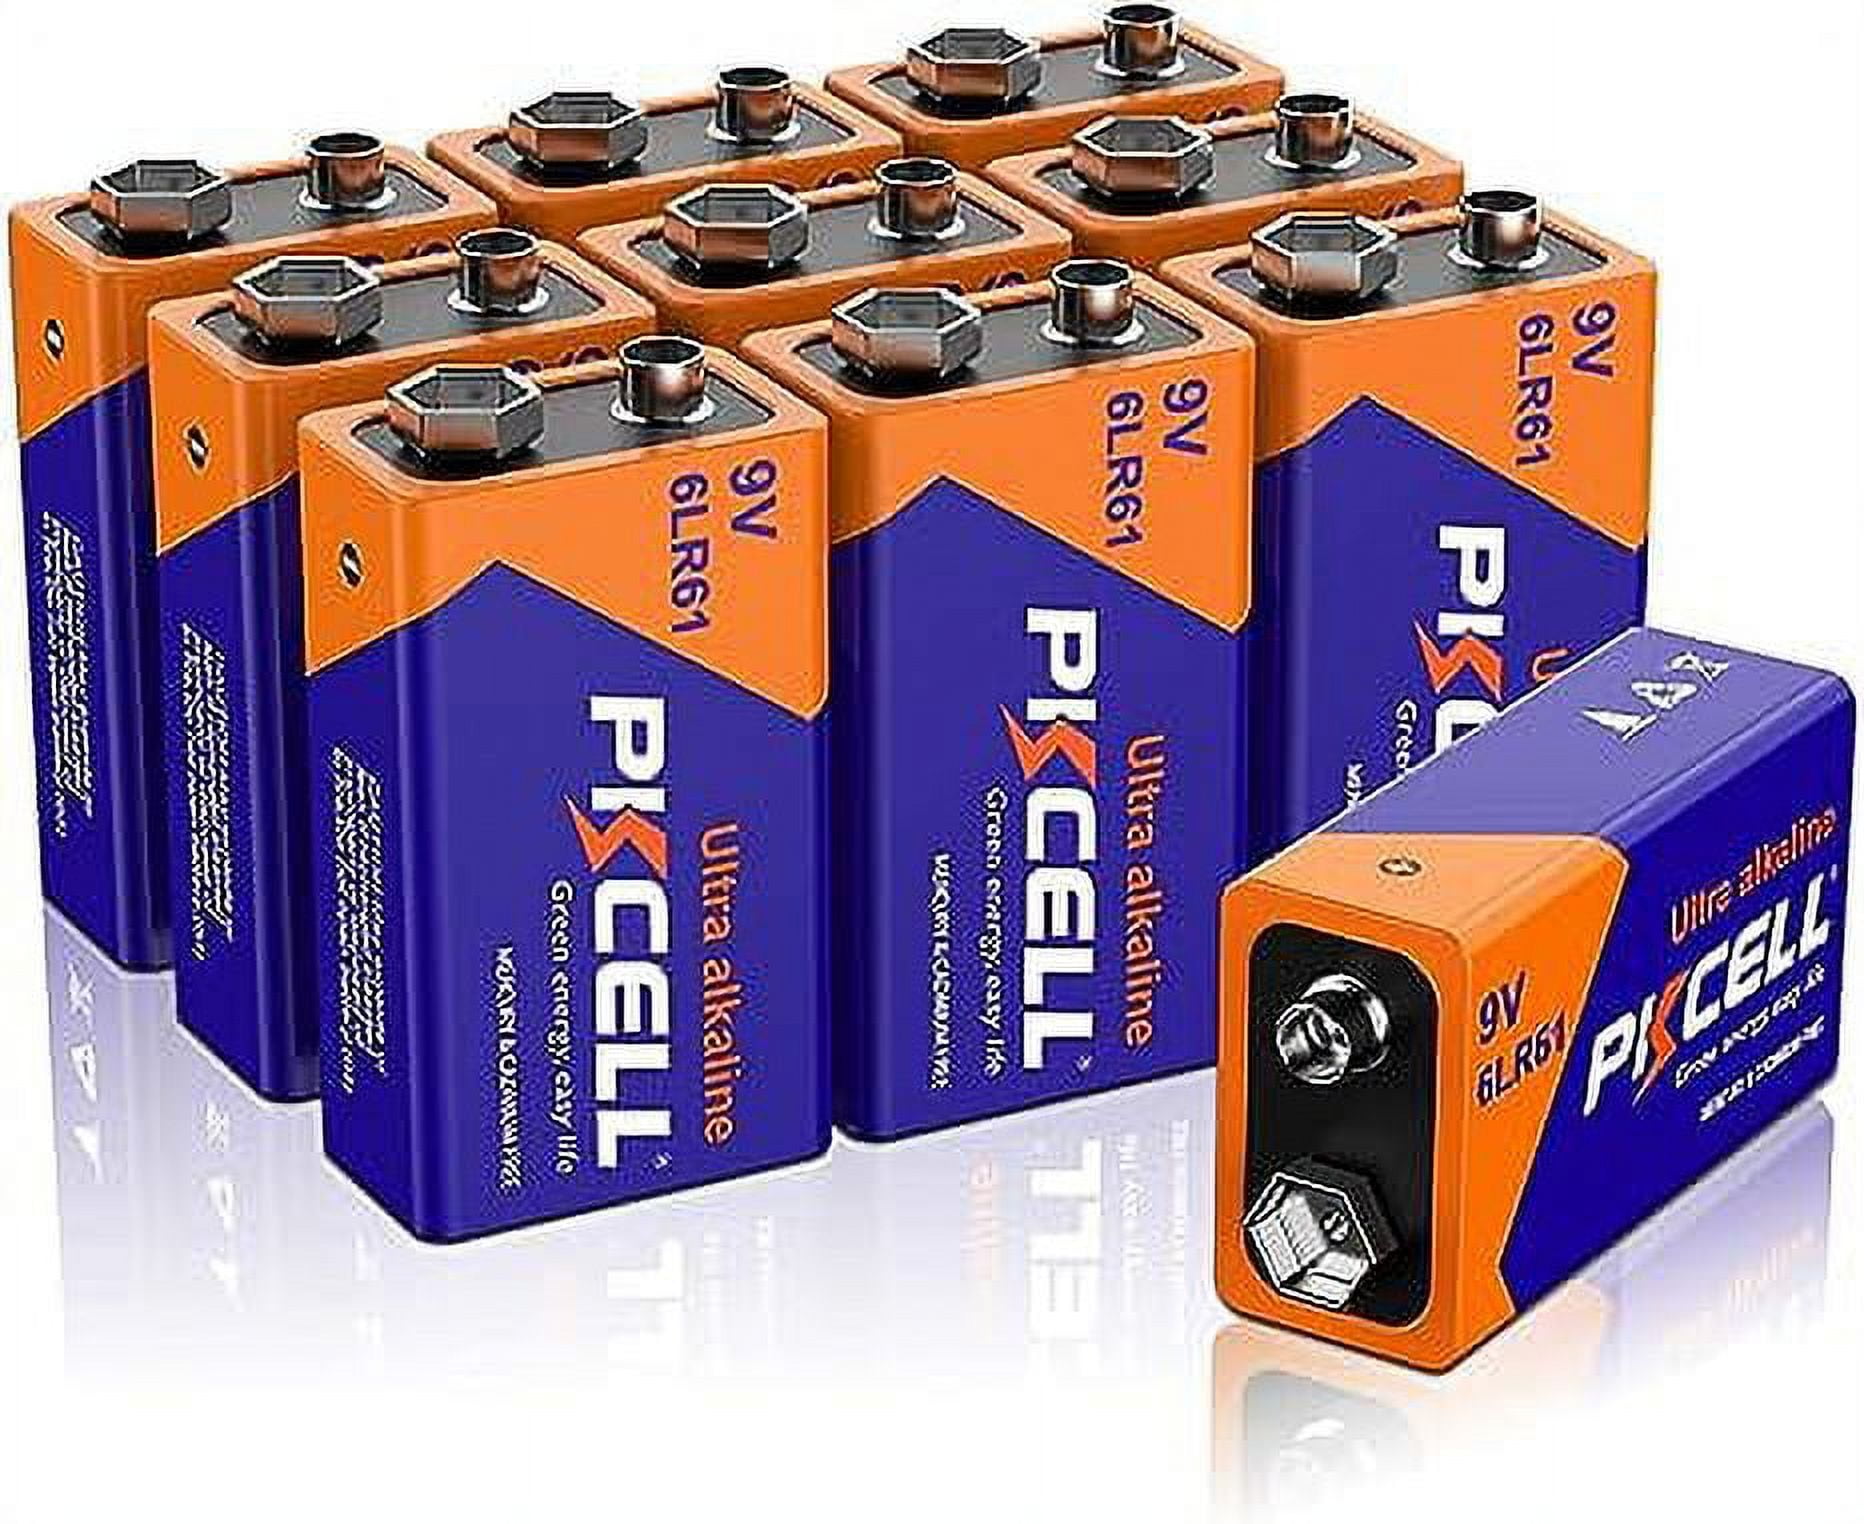 Duracell - Pilas alcalinas CopperTop de 9V - Batería de larga duración,  multiusos, de 9 voltios, para el hogar y la empresa - 4 unidades